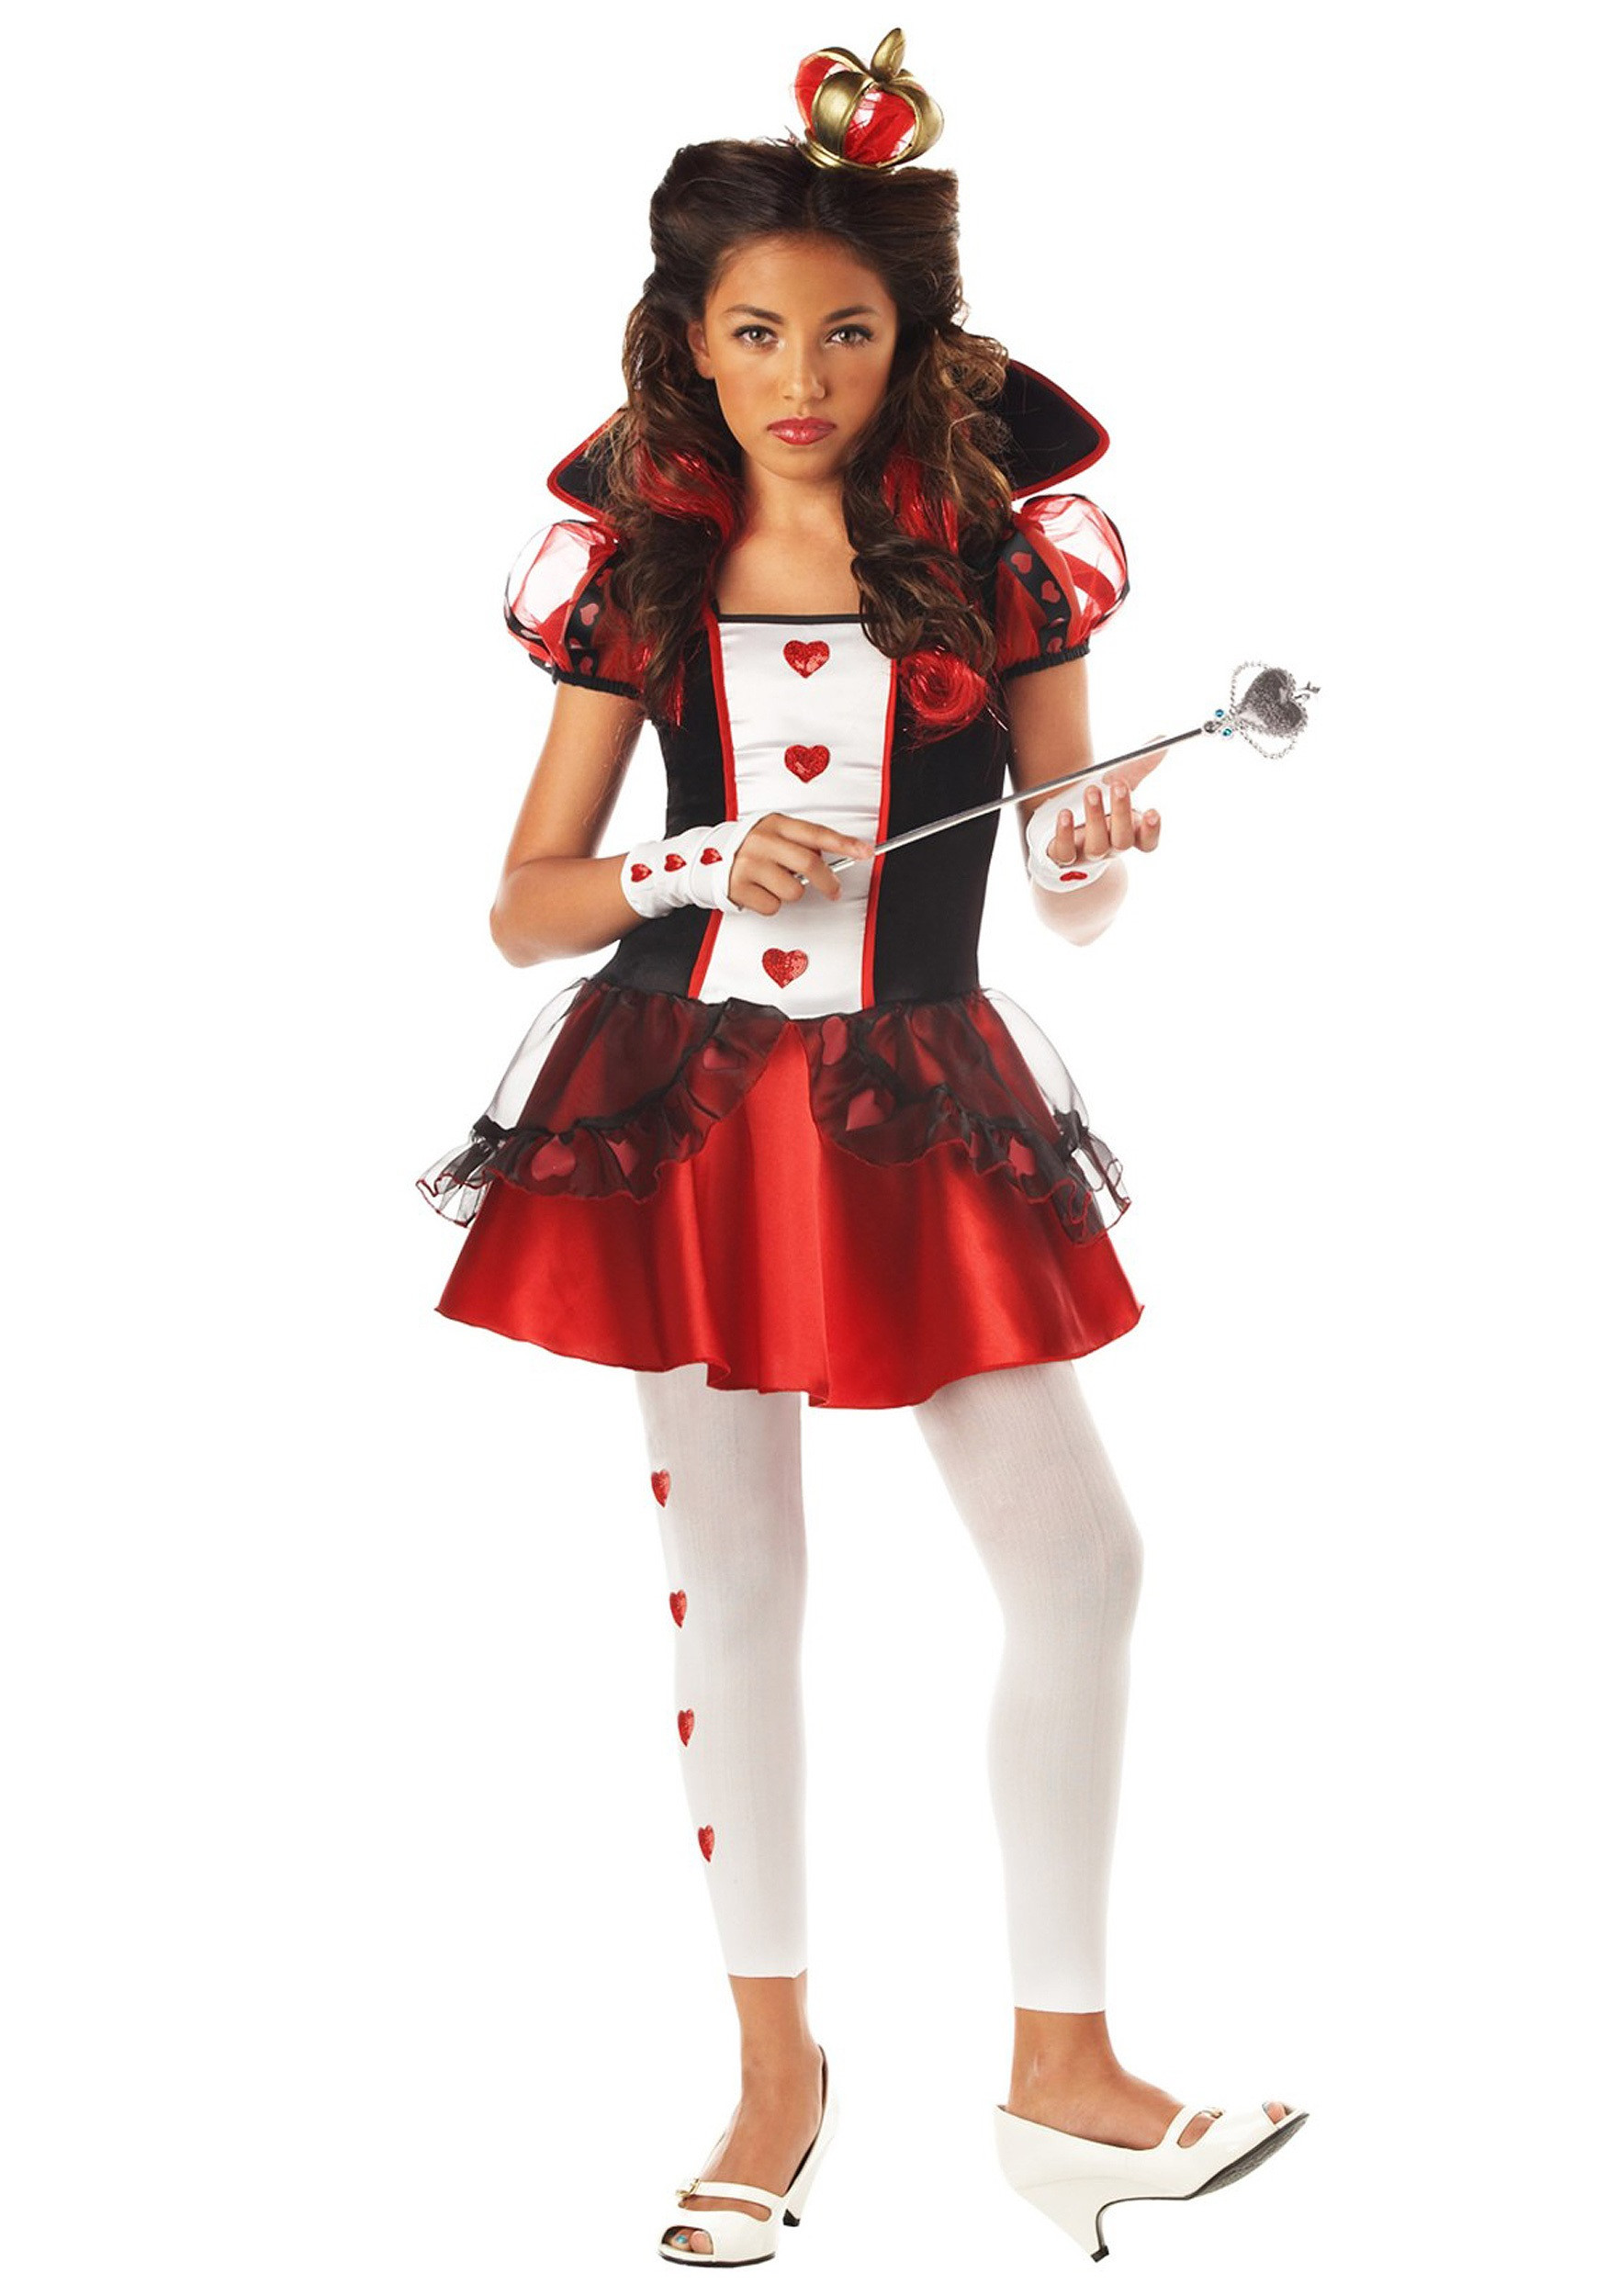 Good Ideas For Halloween Costumes
 Tween Queen of Hearts Costume